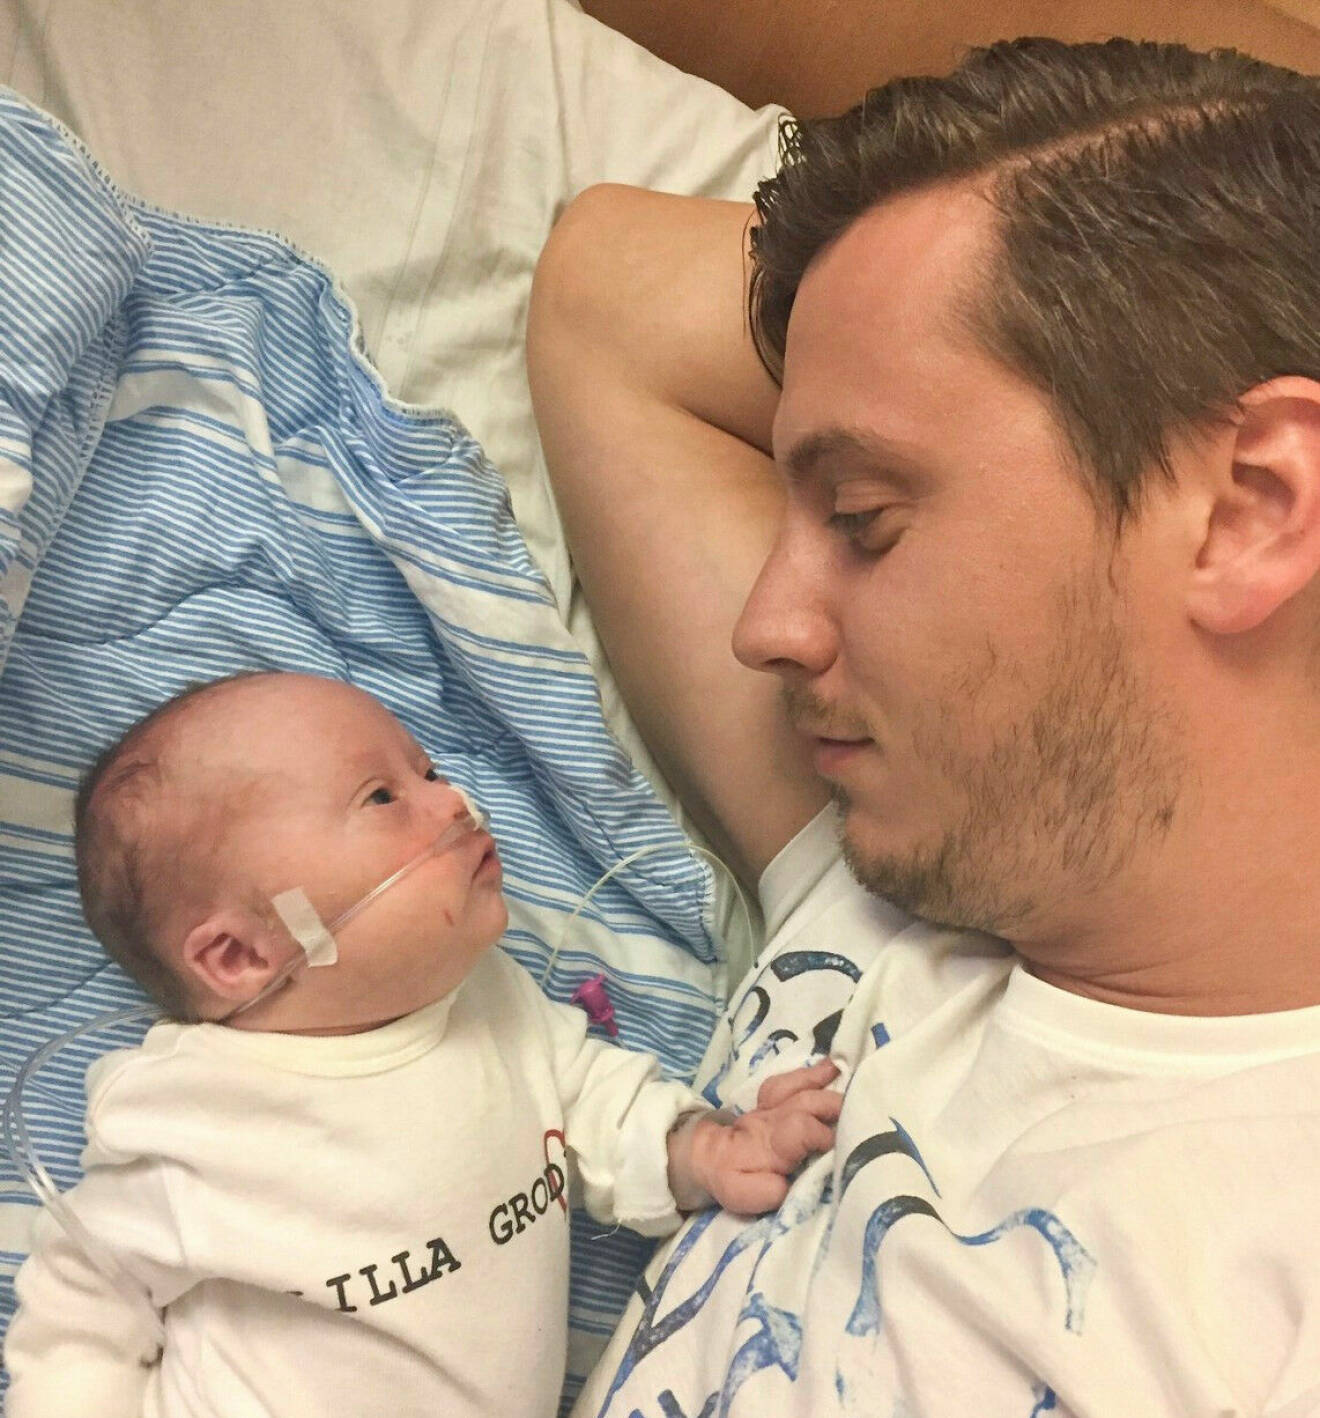 Nyfödde Svante och pappa Patrik ligger i en sjukhussäng och tittar på varandra.